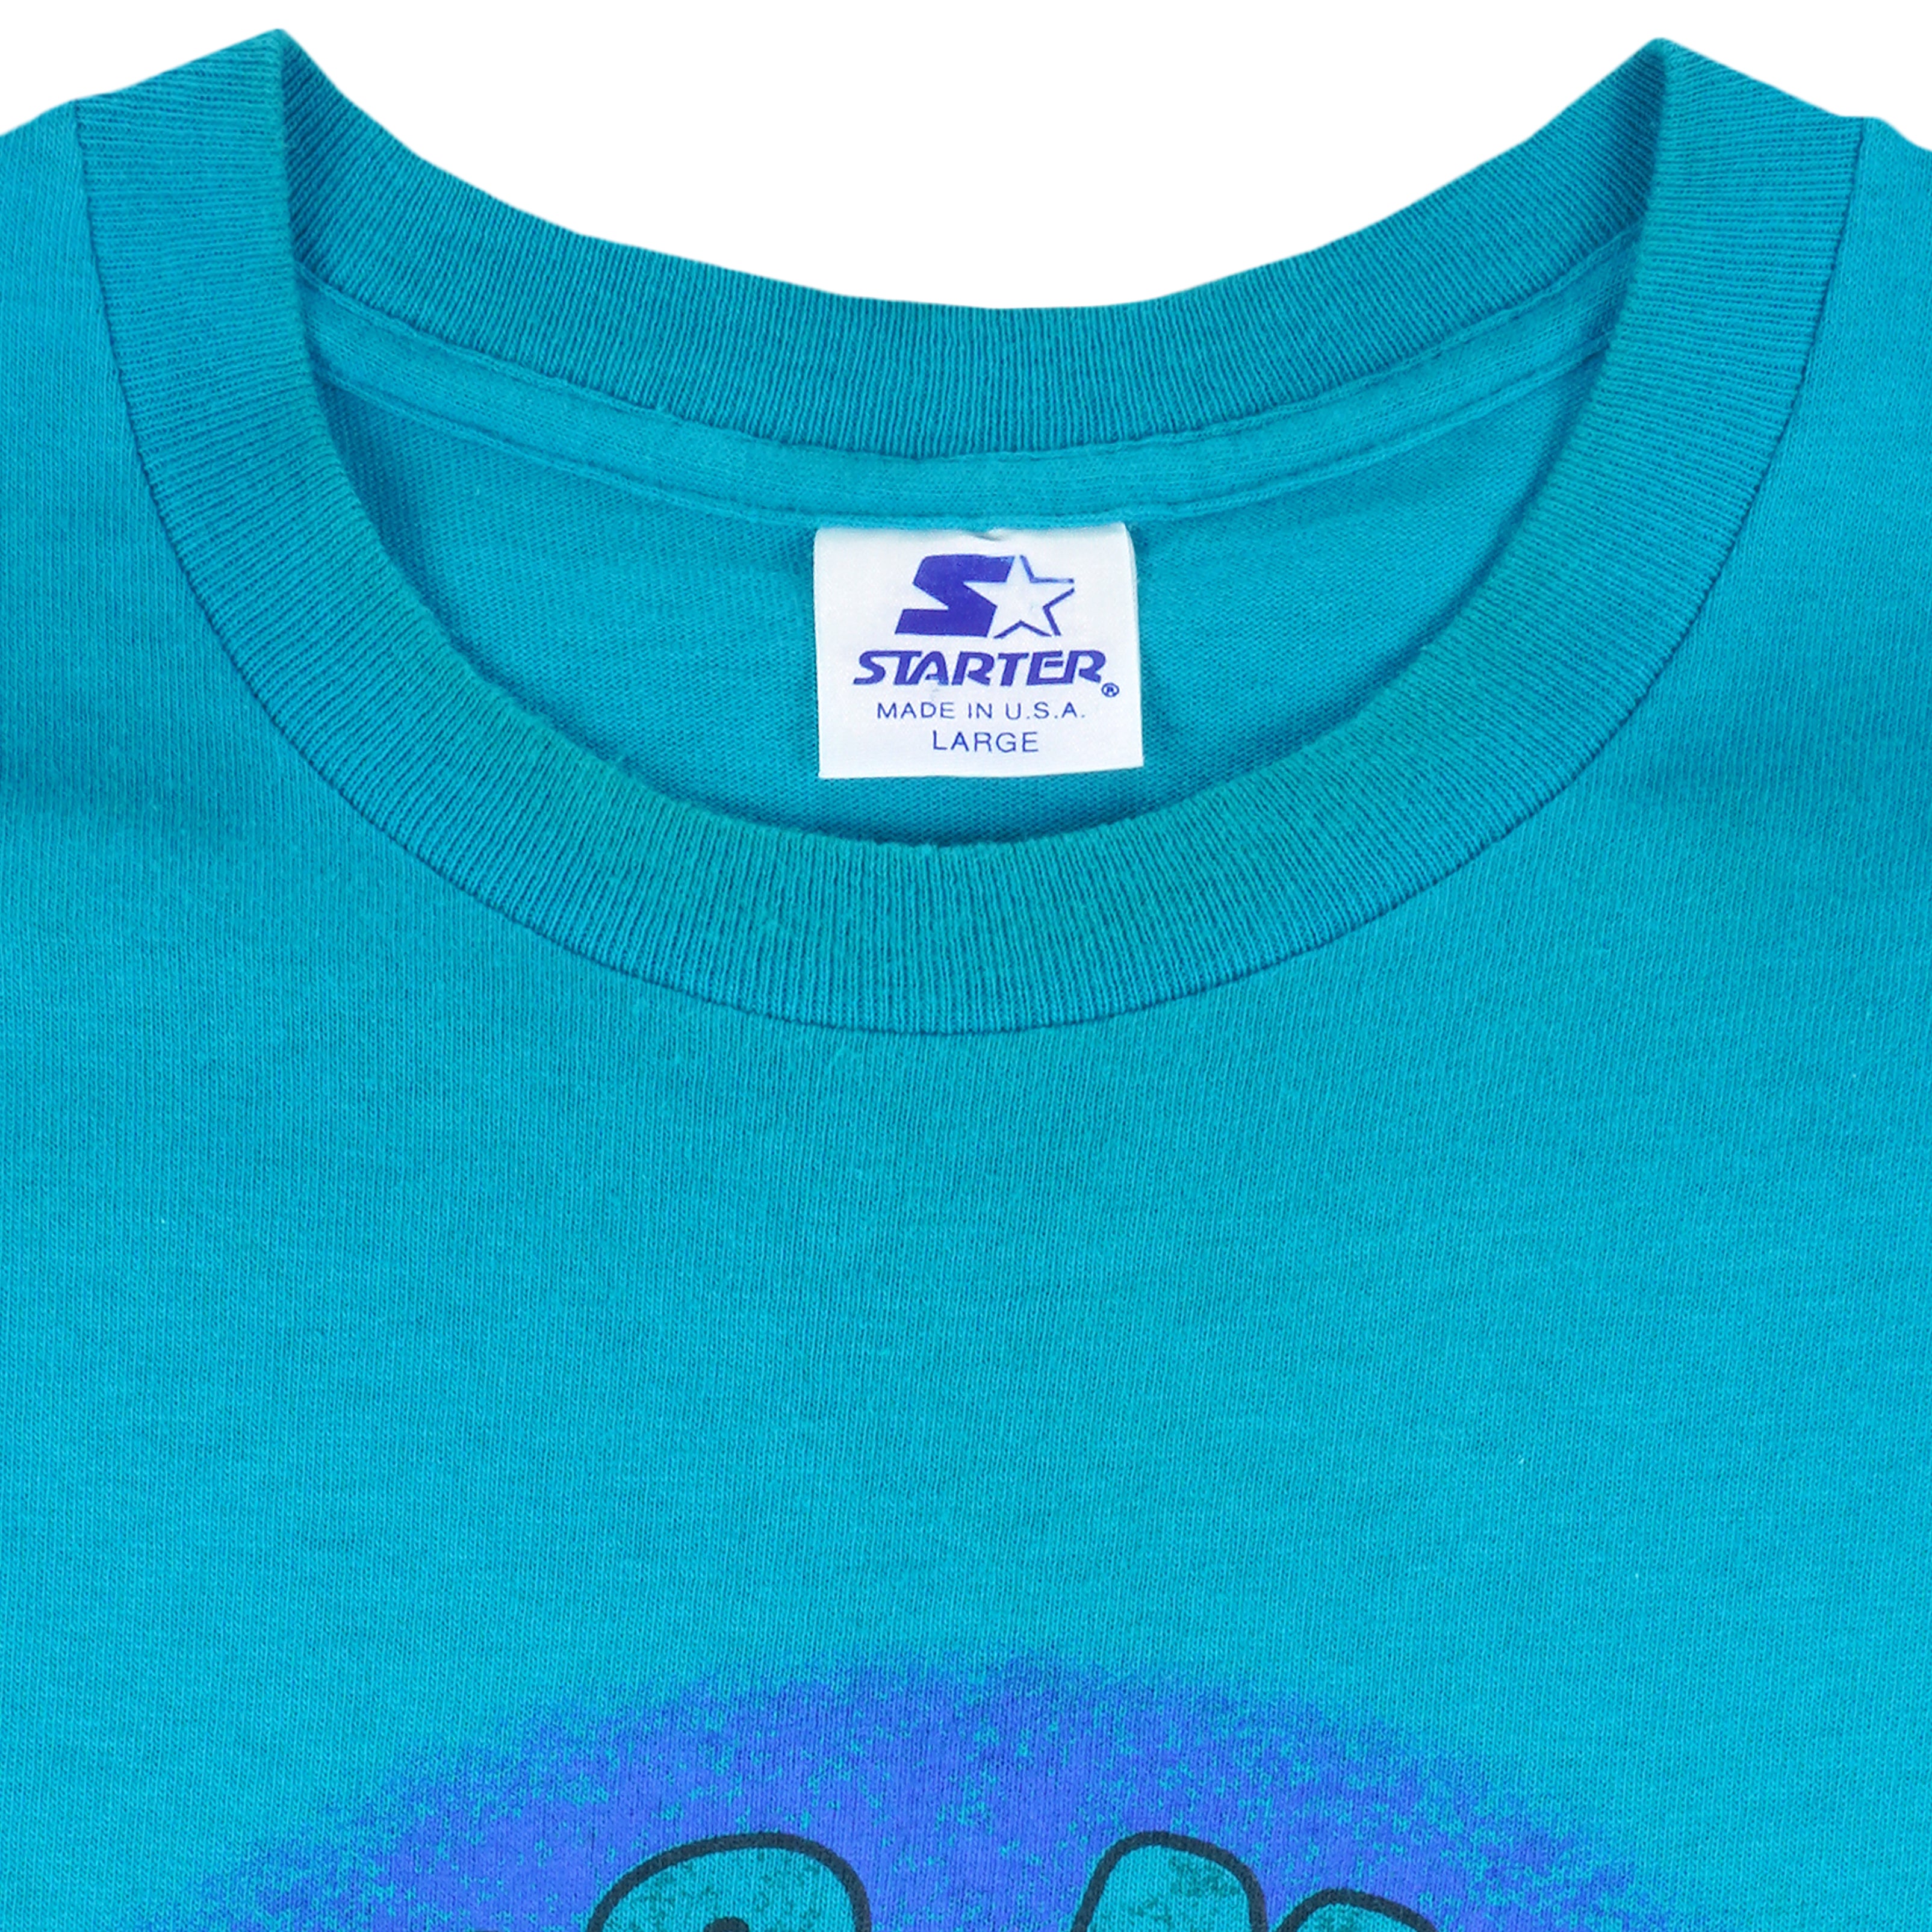 Vintage Miami Marlin Crewneck Sweatshirt / T-shirt Marlins 